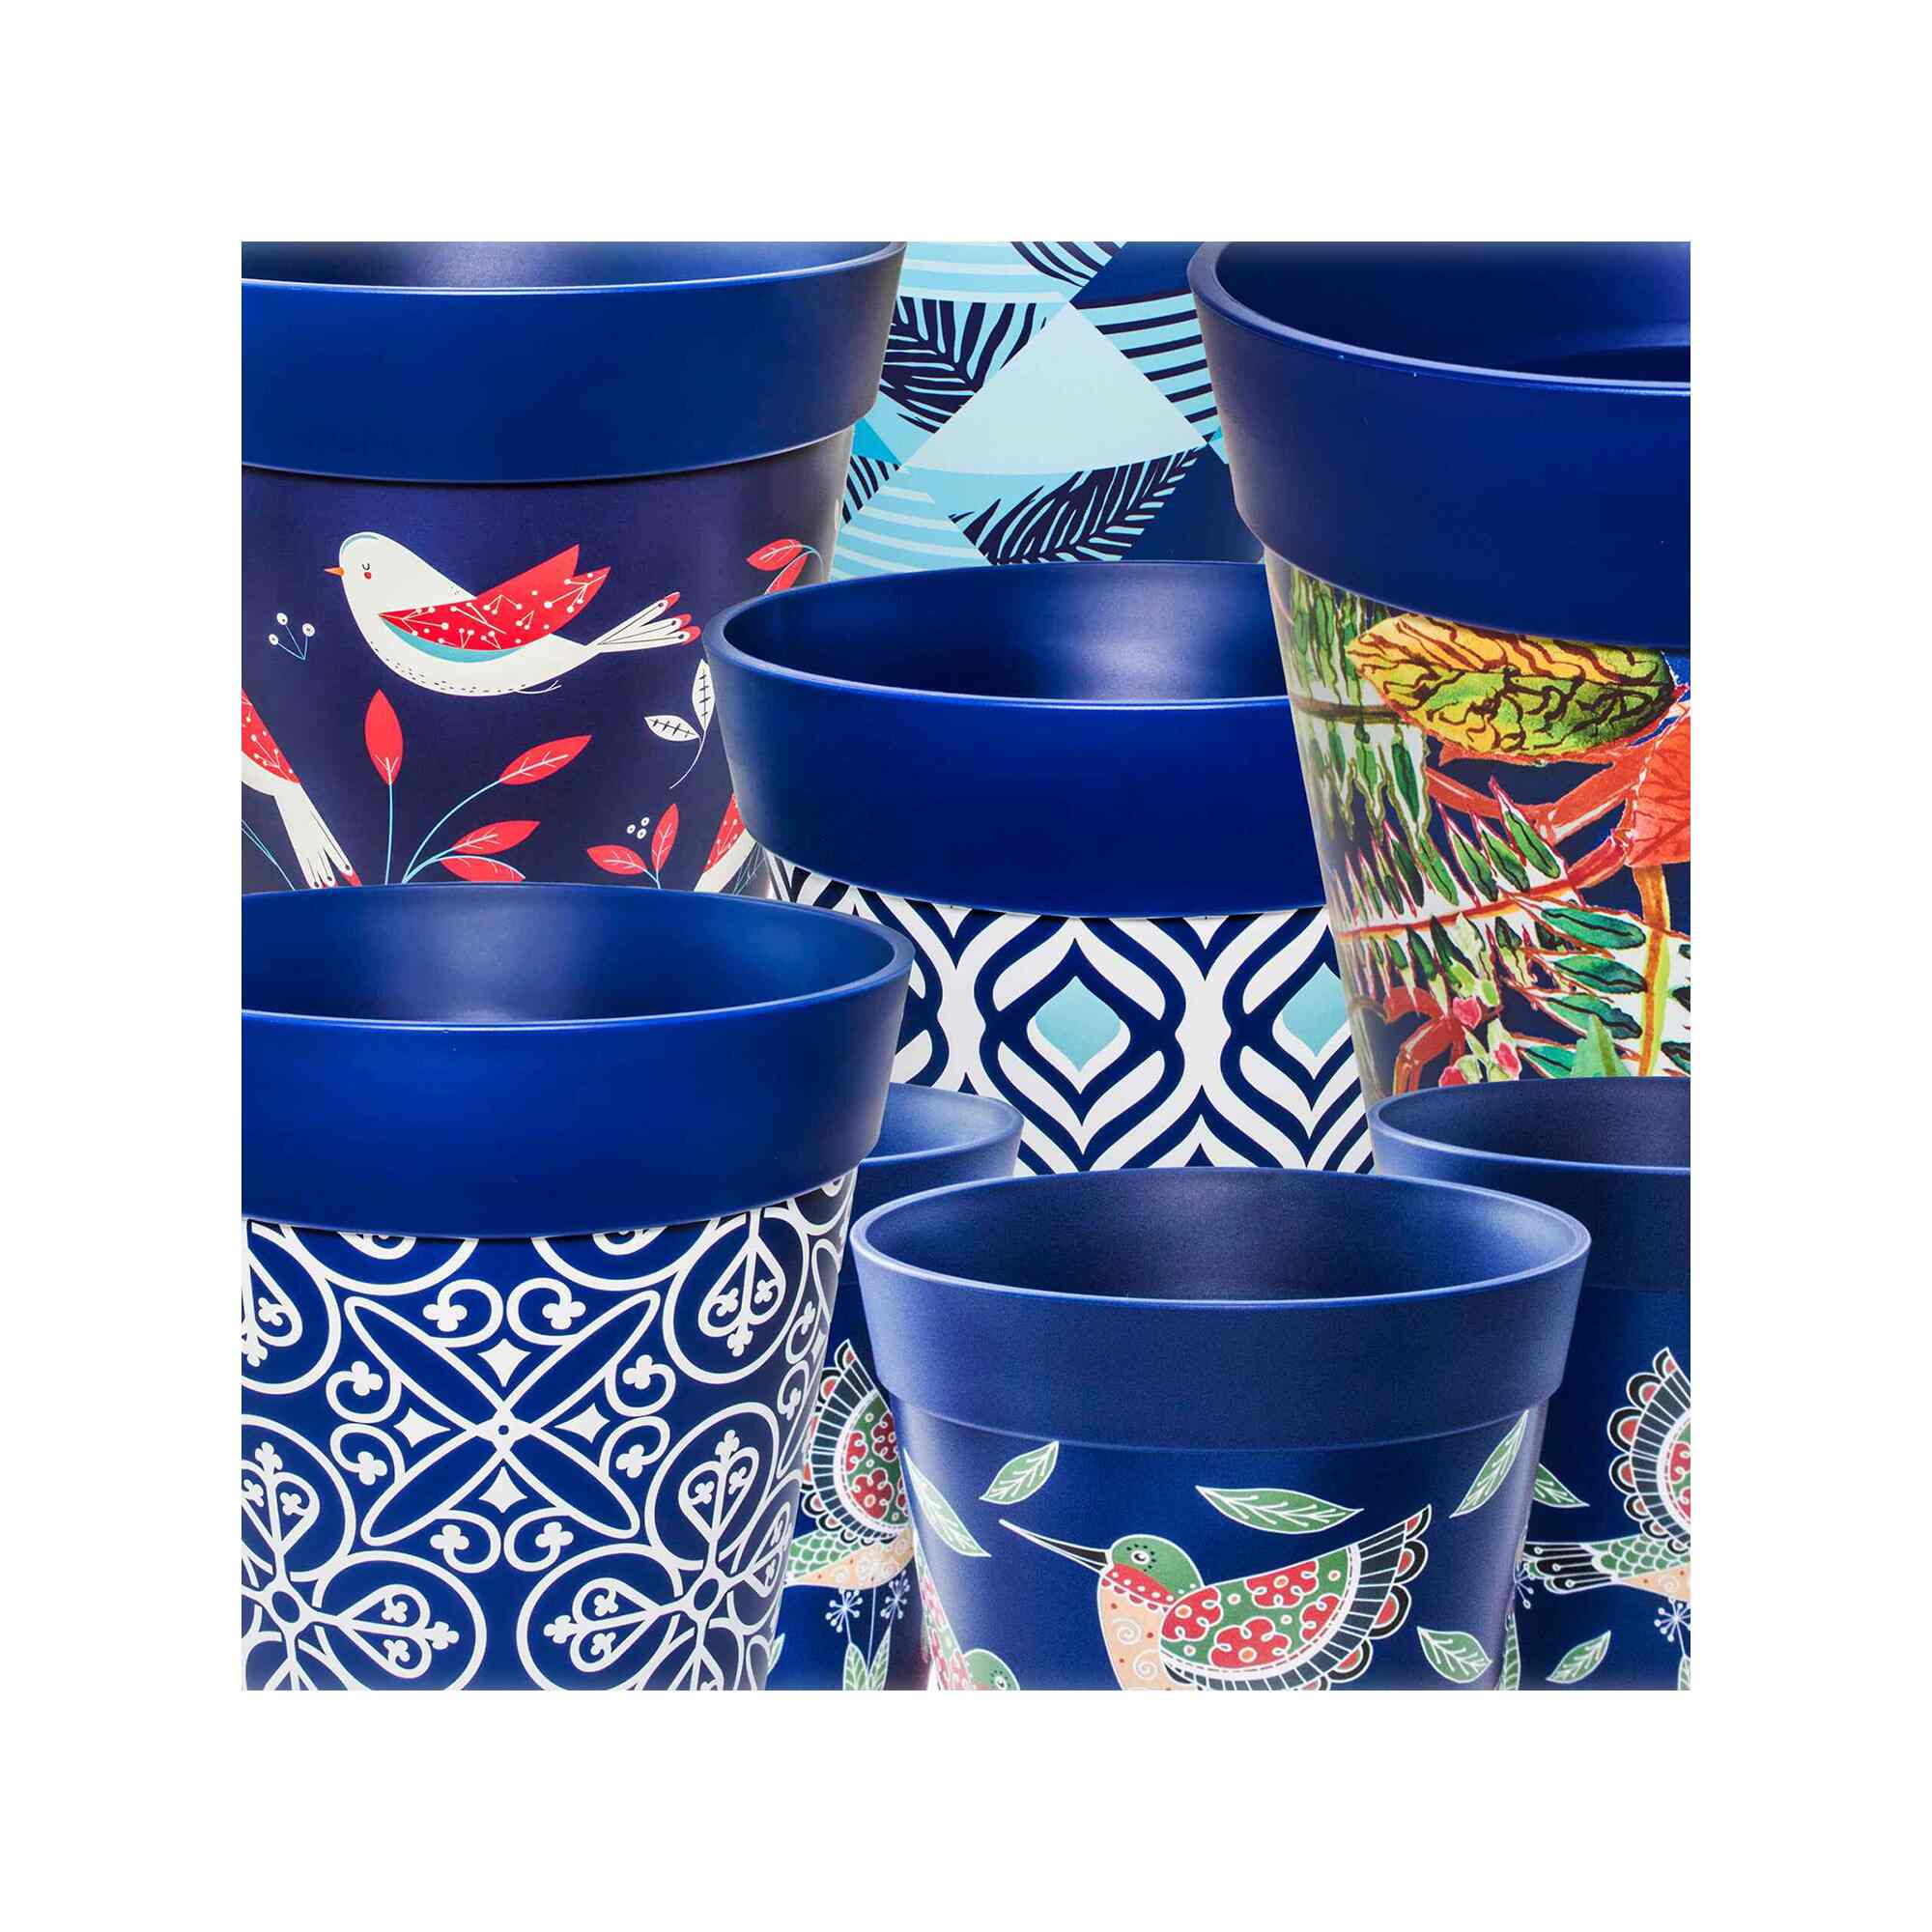 Plastic flowerpots in a range of blue designs